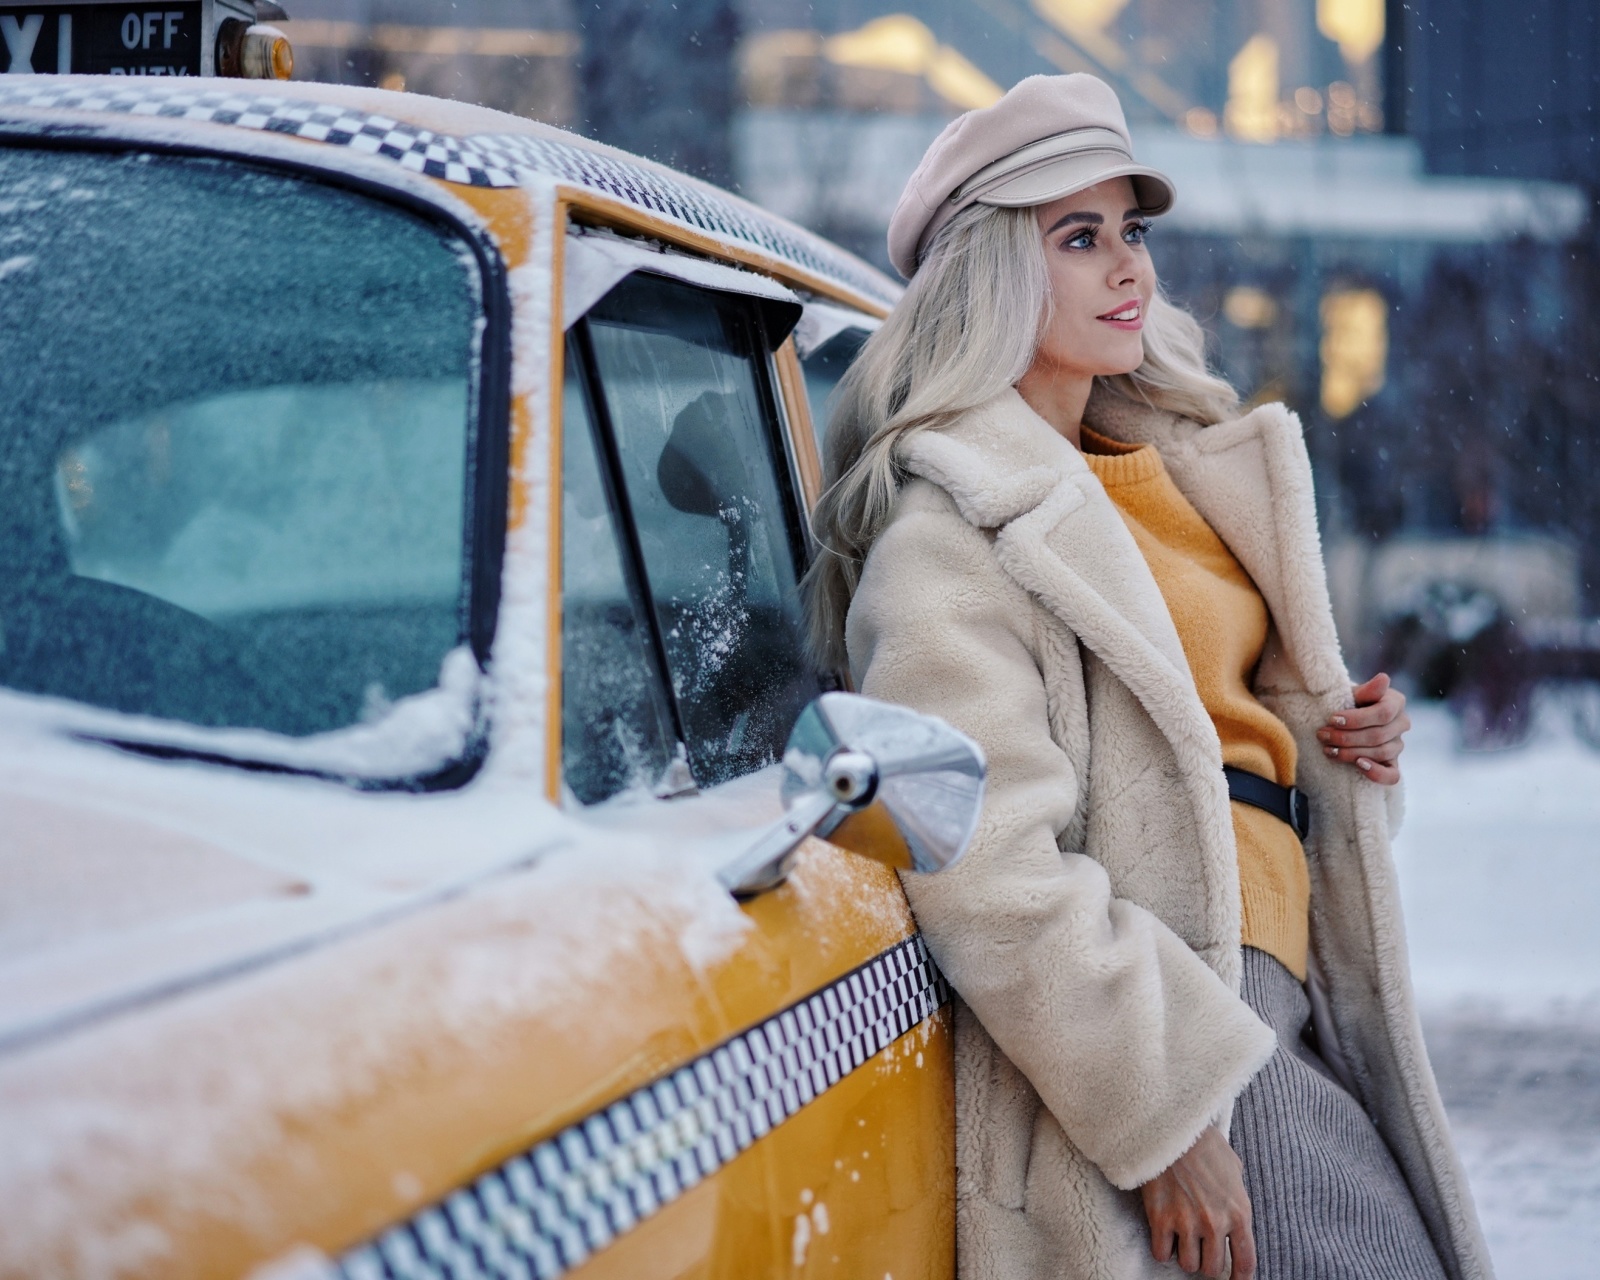 Обои Winter Girl and Taxi 1600x1280